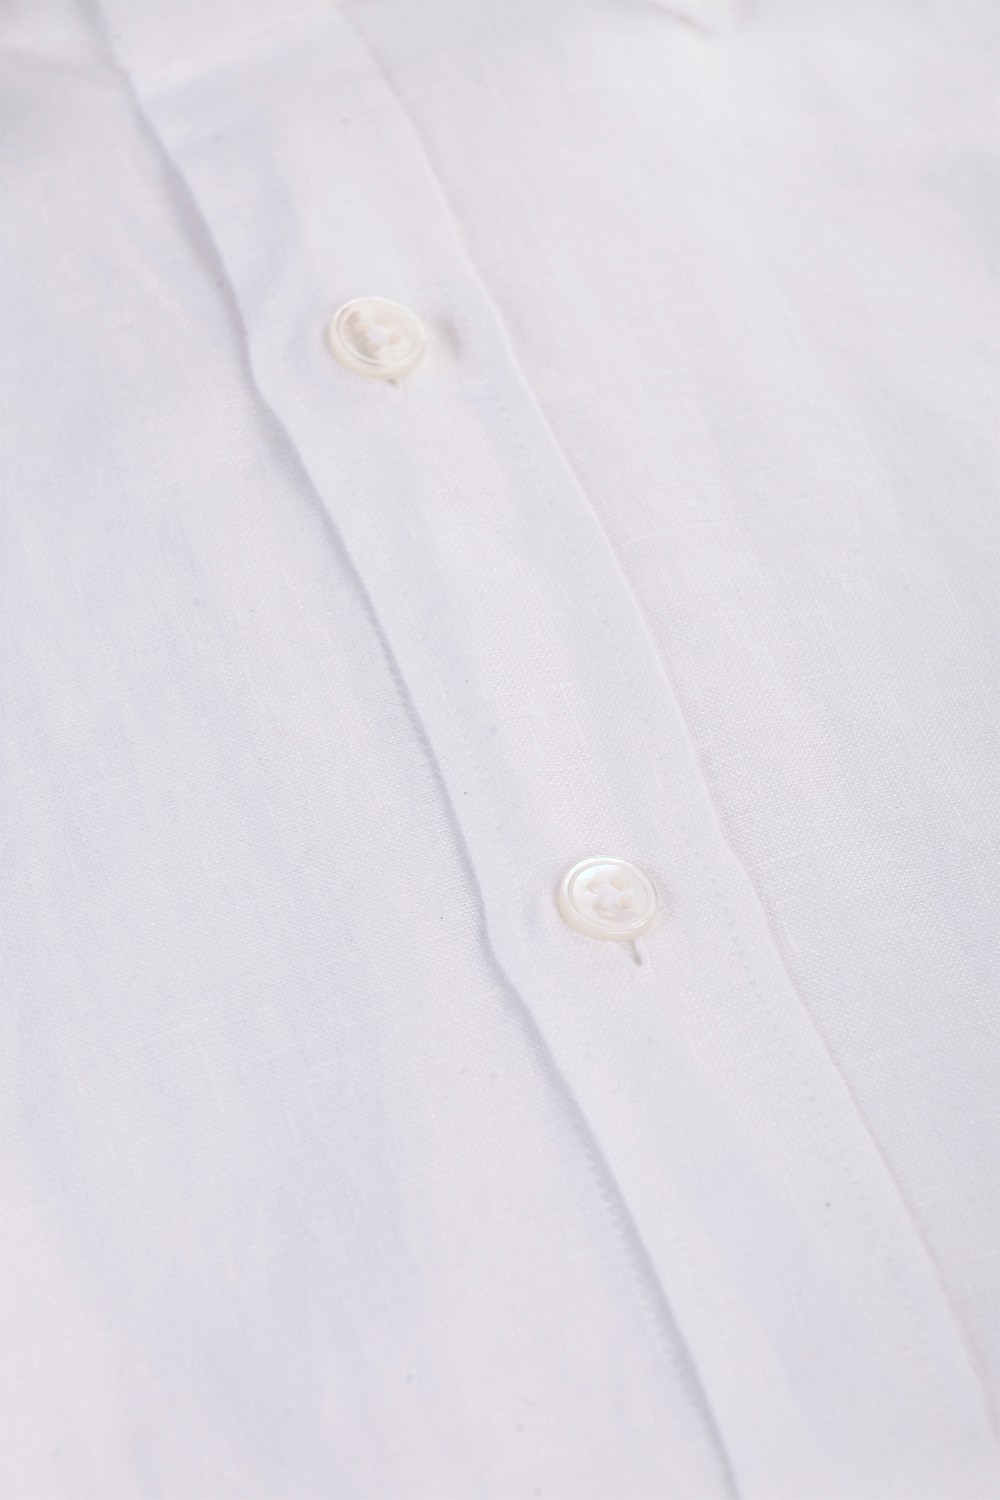 shop BAGUTTA Saldi Camicia: Bagutta camicia bianca di lino.
Colletto semi aperto.
Slim fit.
Composizione: 100% lino.
Made in Italy.. BERLINO EALT 11028-001 number 9850335